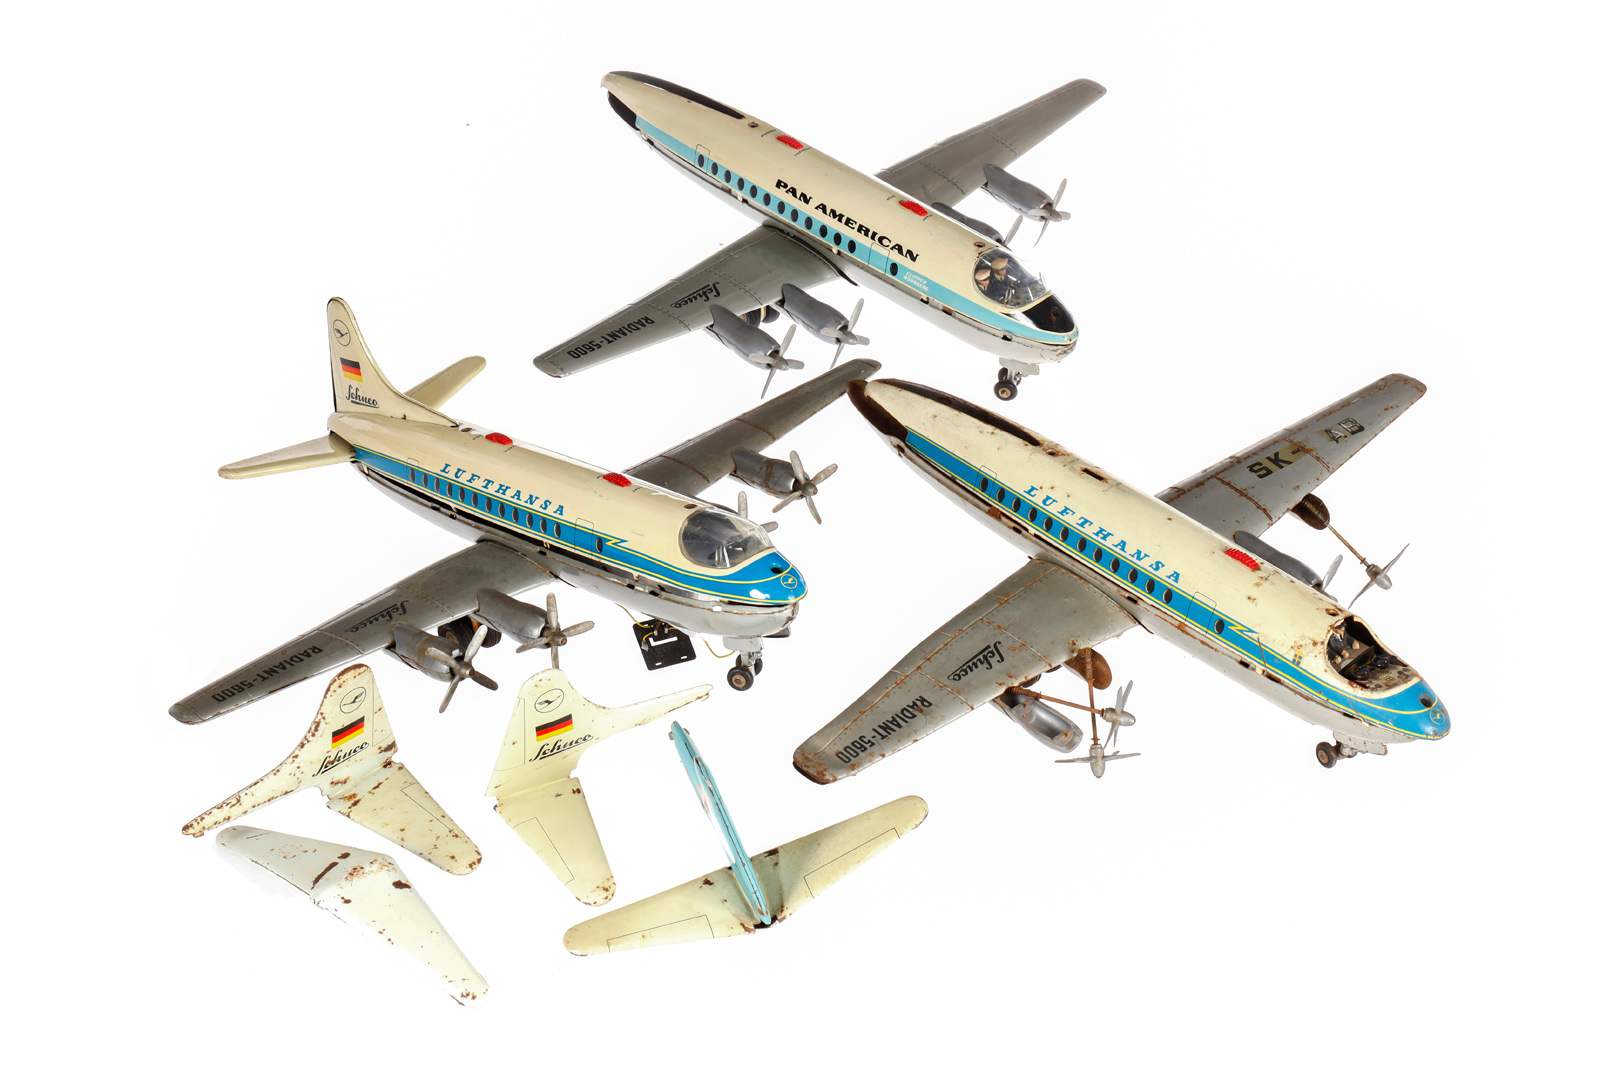 3 SCHUCO Flugzeuge ”Pan American” und ”Lufthansa”, besch. und tw NV, tw RS, L 42, Z 4, zum